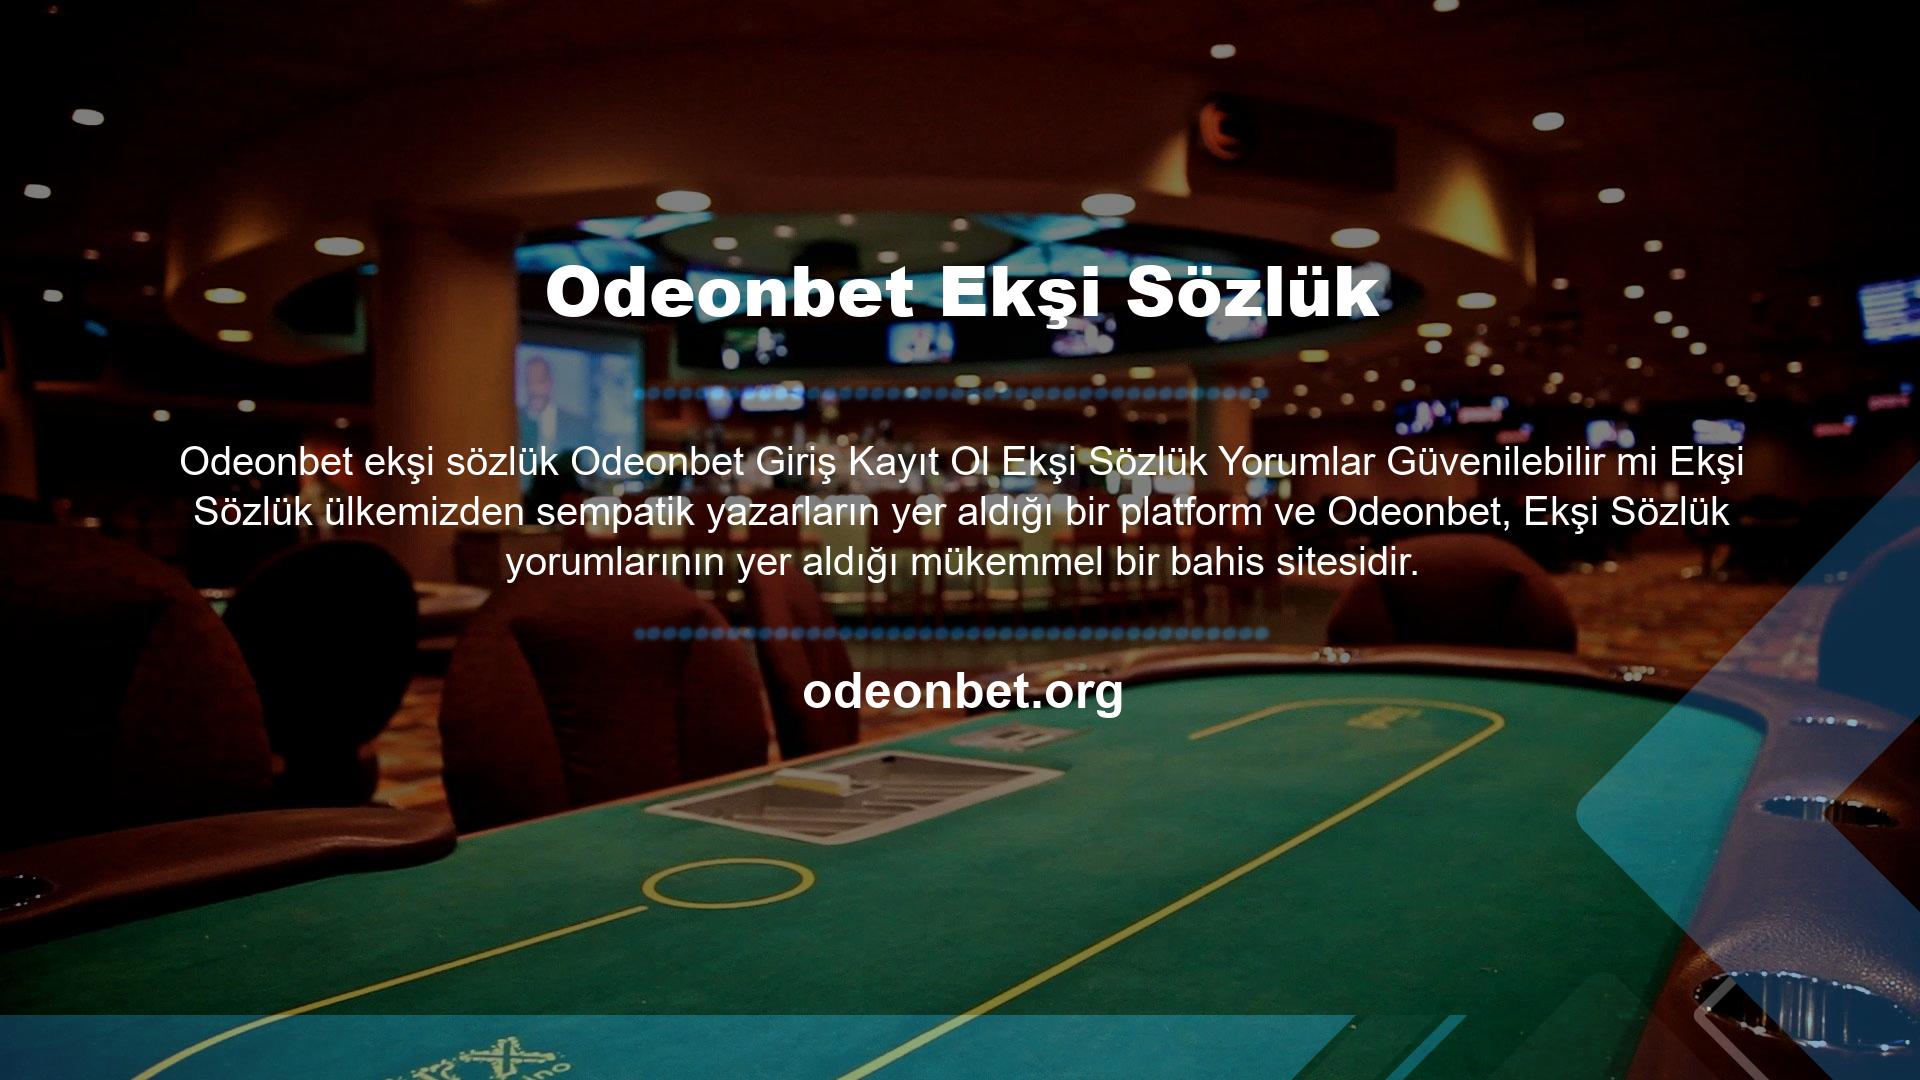 Ayrıca, önemli şifreli kanalların yayınlarına halka ücretsiz erişim sağlayan Canlı TV özelliği ile Odeonbet web sitesinin önemli bir özelliği olarak kabul edilir